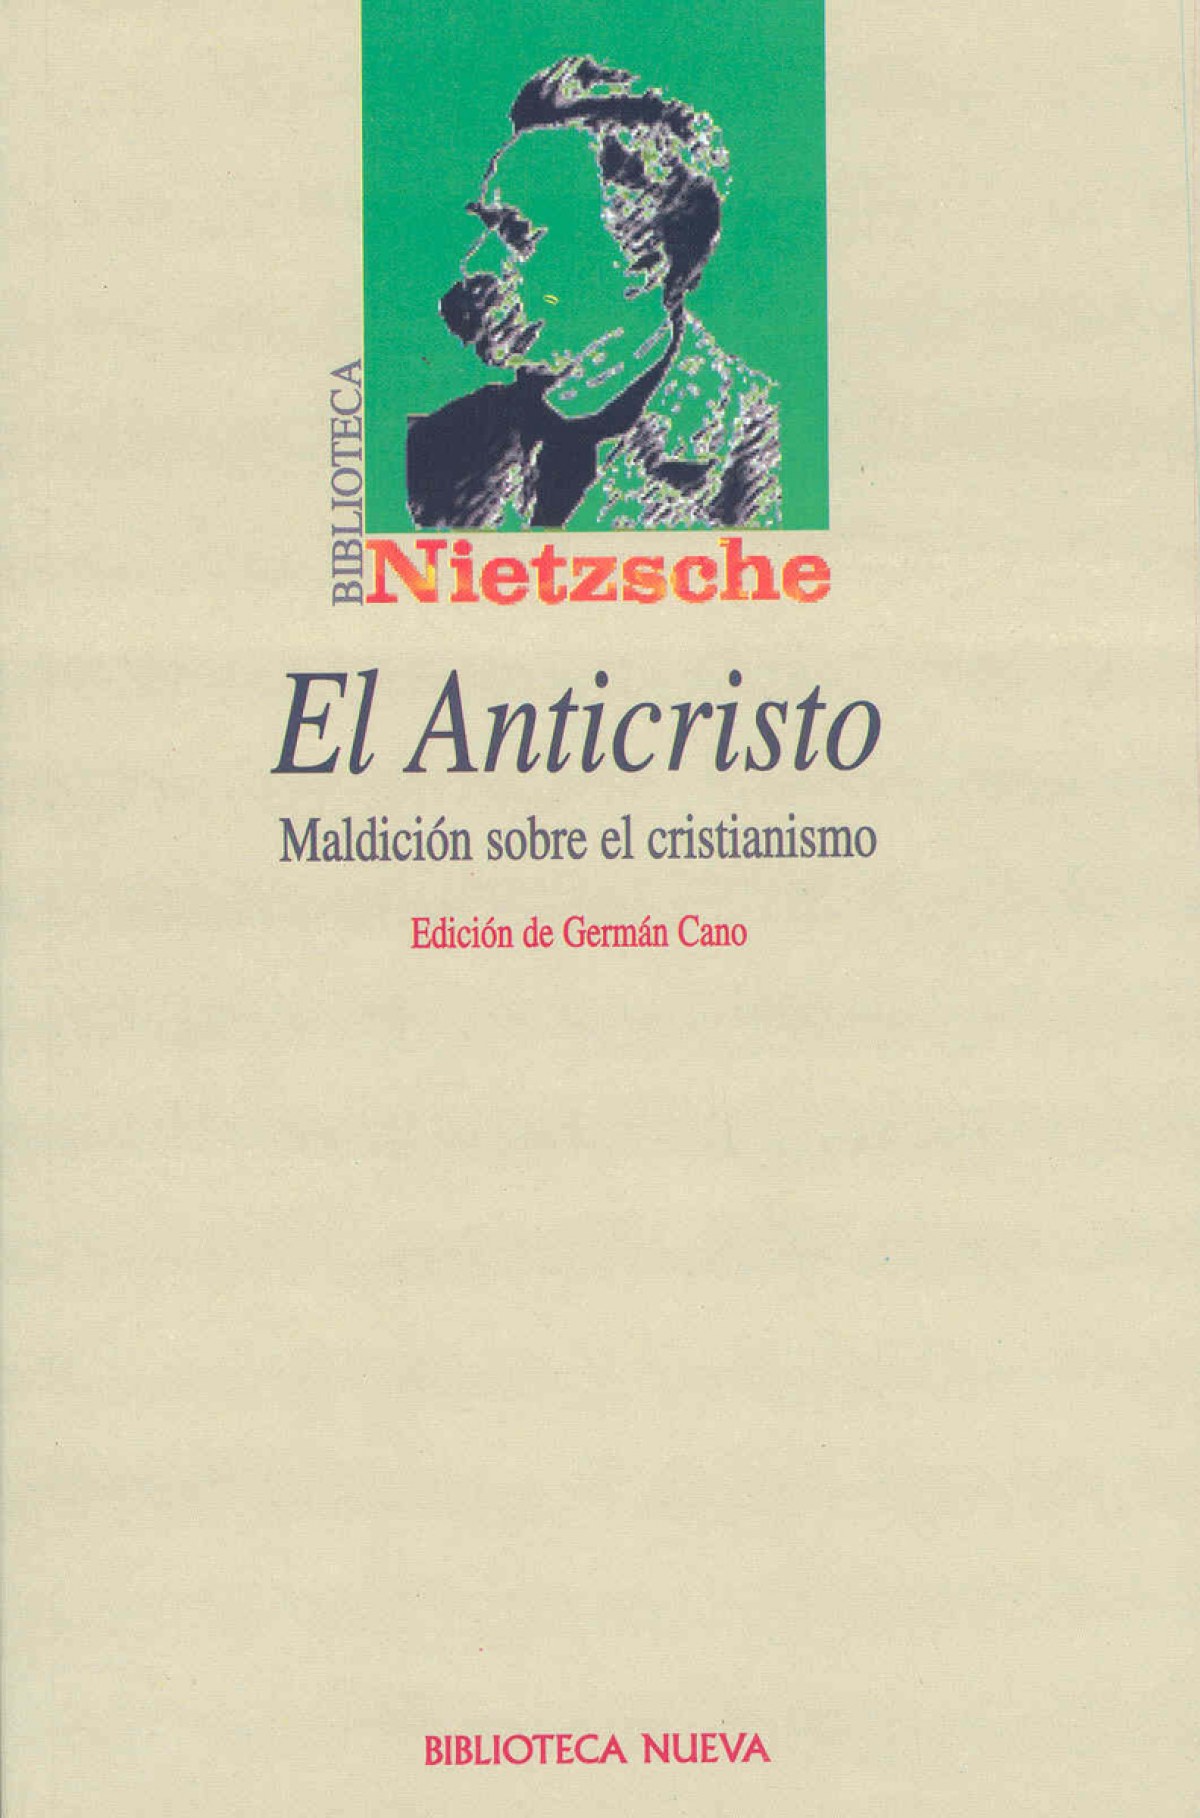 Anticristo,el - Nietzsche / Cano